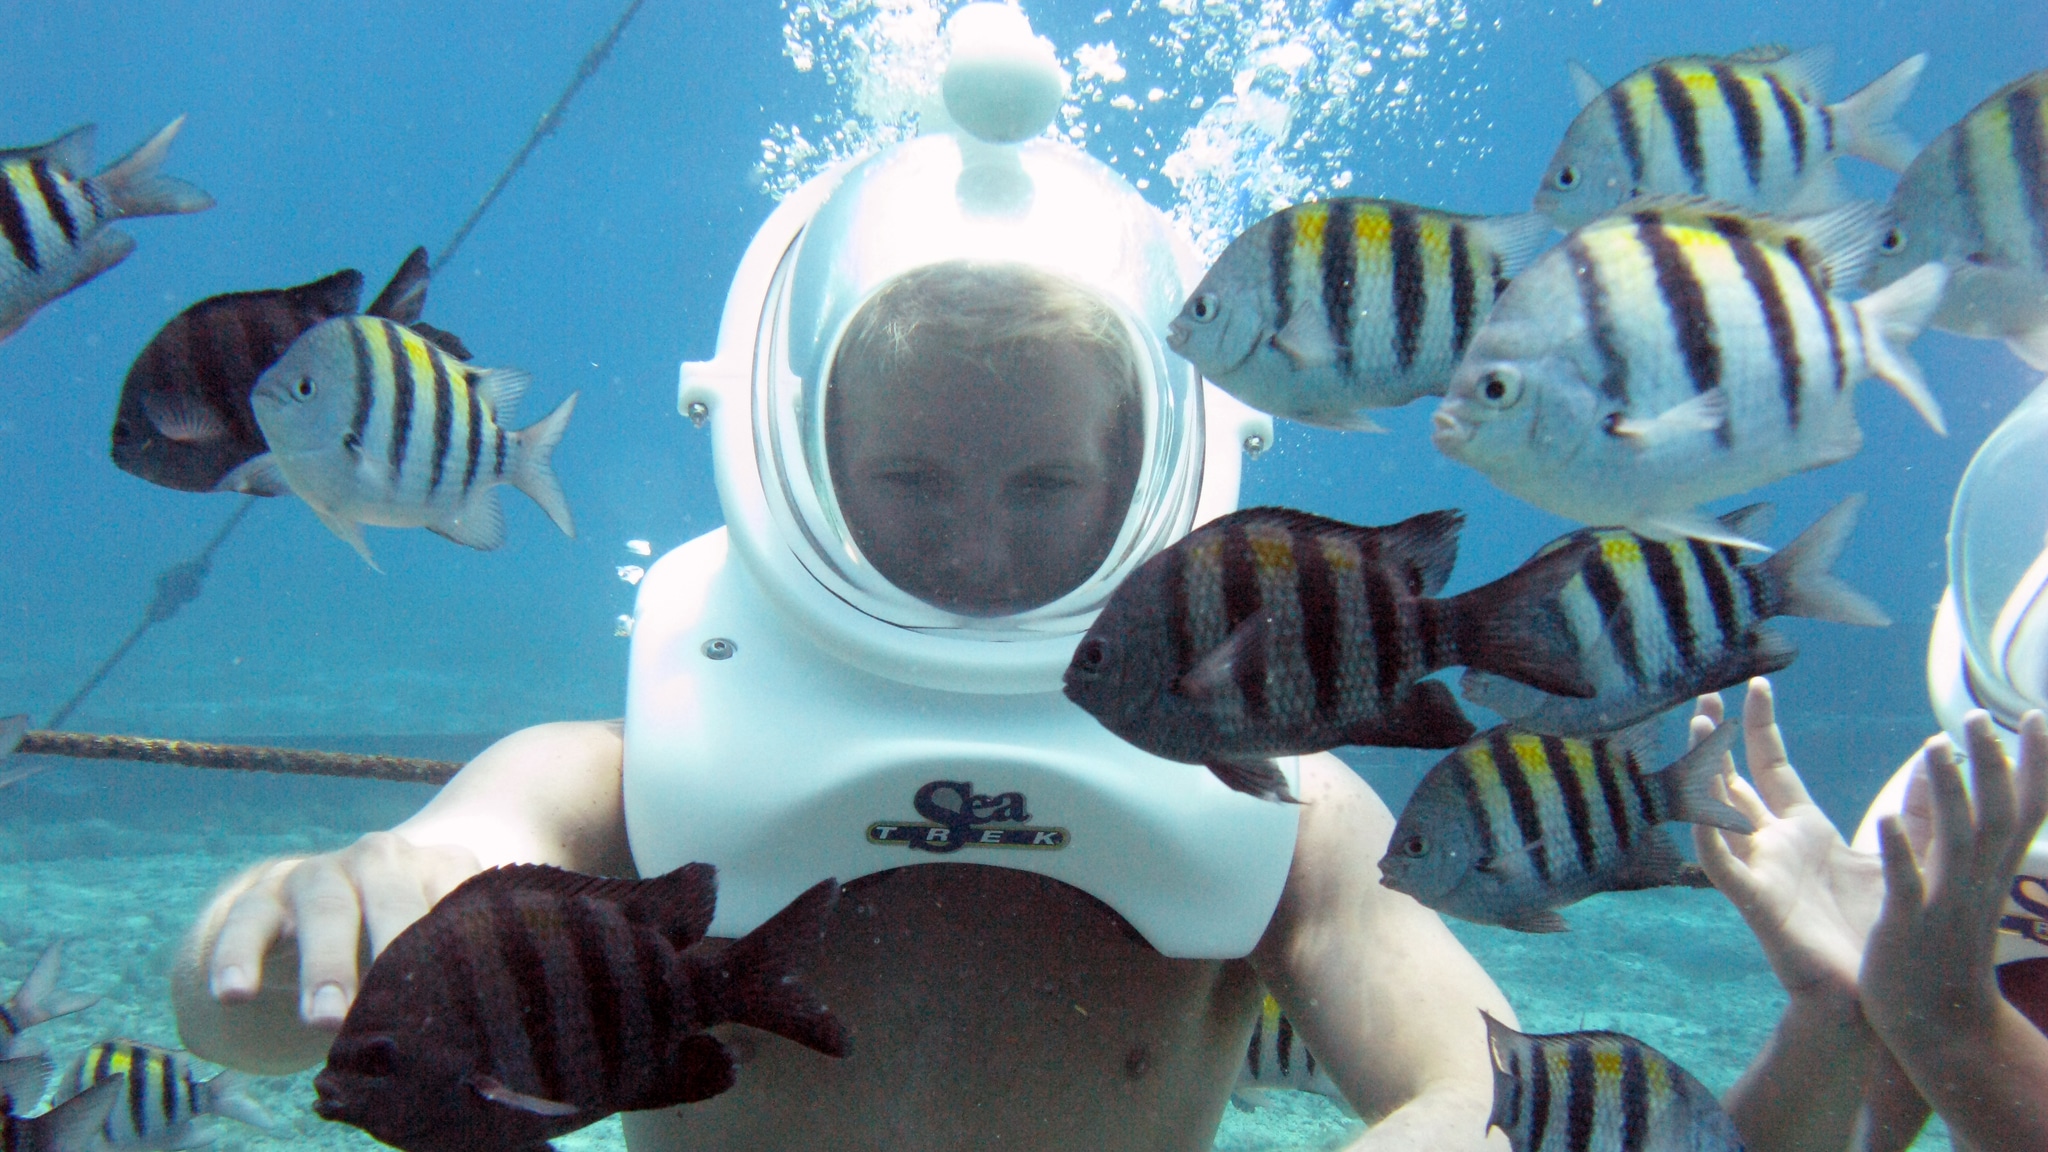 sea trek helmet diving & snorkeling